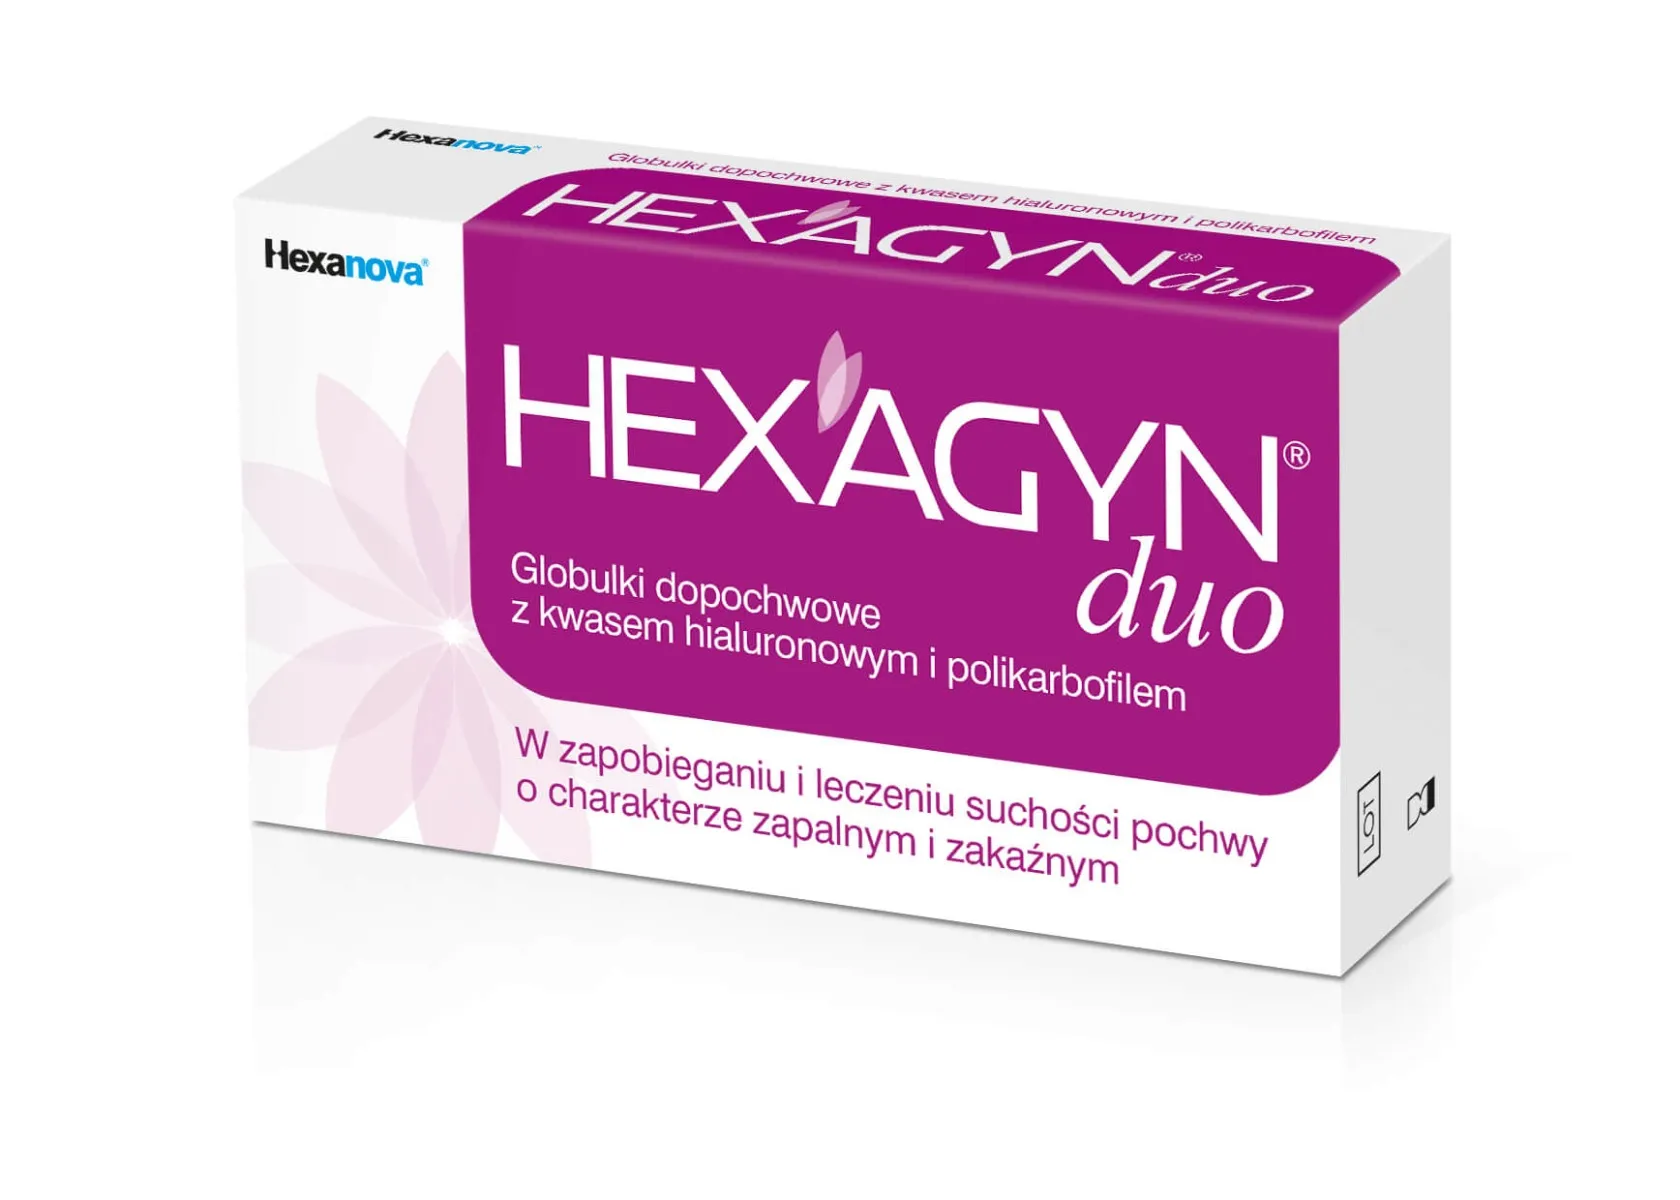 Hexagyn Duo - Globulki dopochwowe, 10 szt. globulek po 2 g każda 